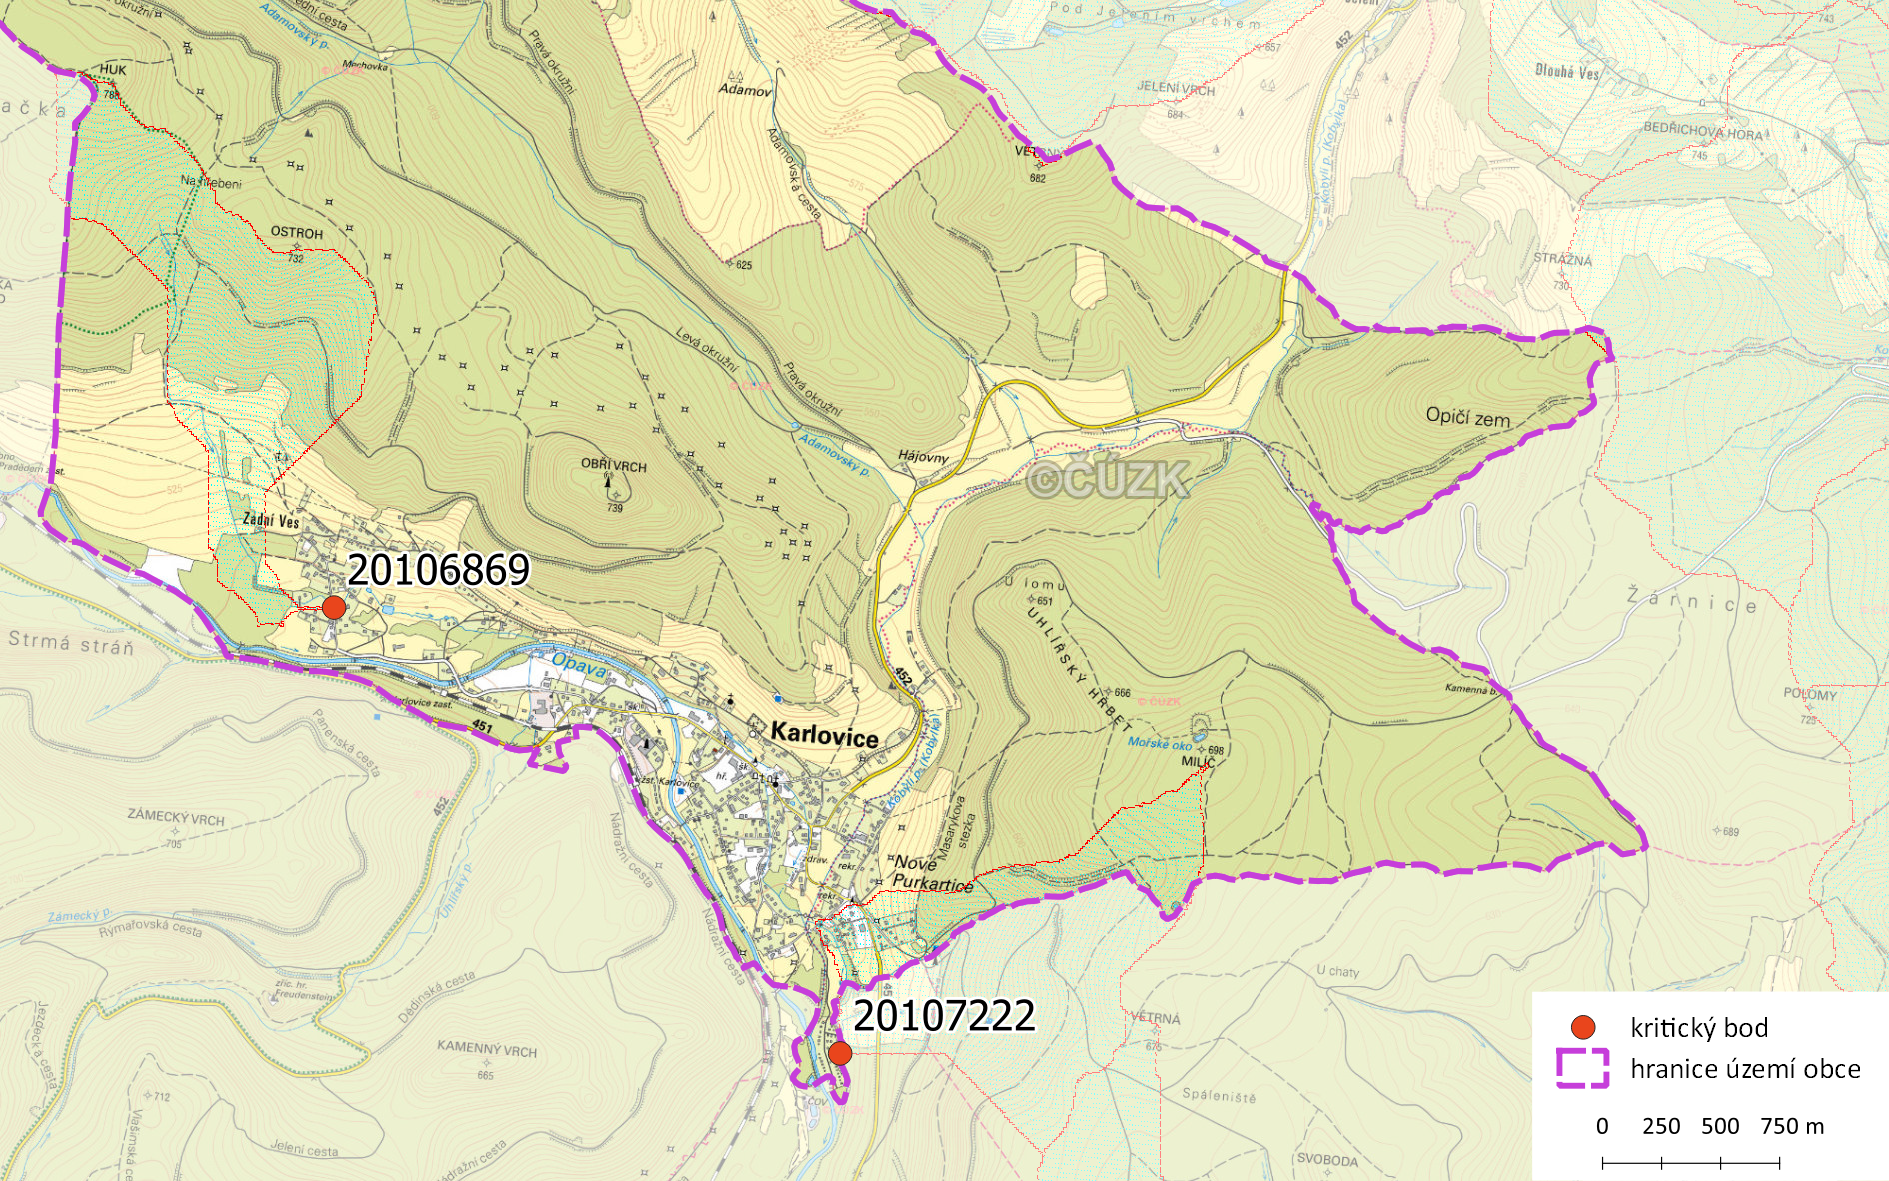 Zhodnocení vzniku přívalových povodní na území obce Karlovice metodou kritických bodů